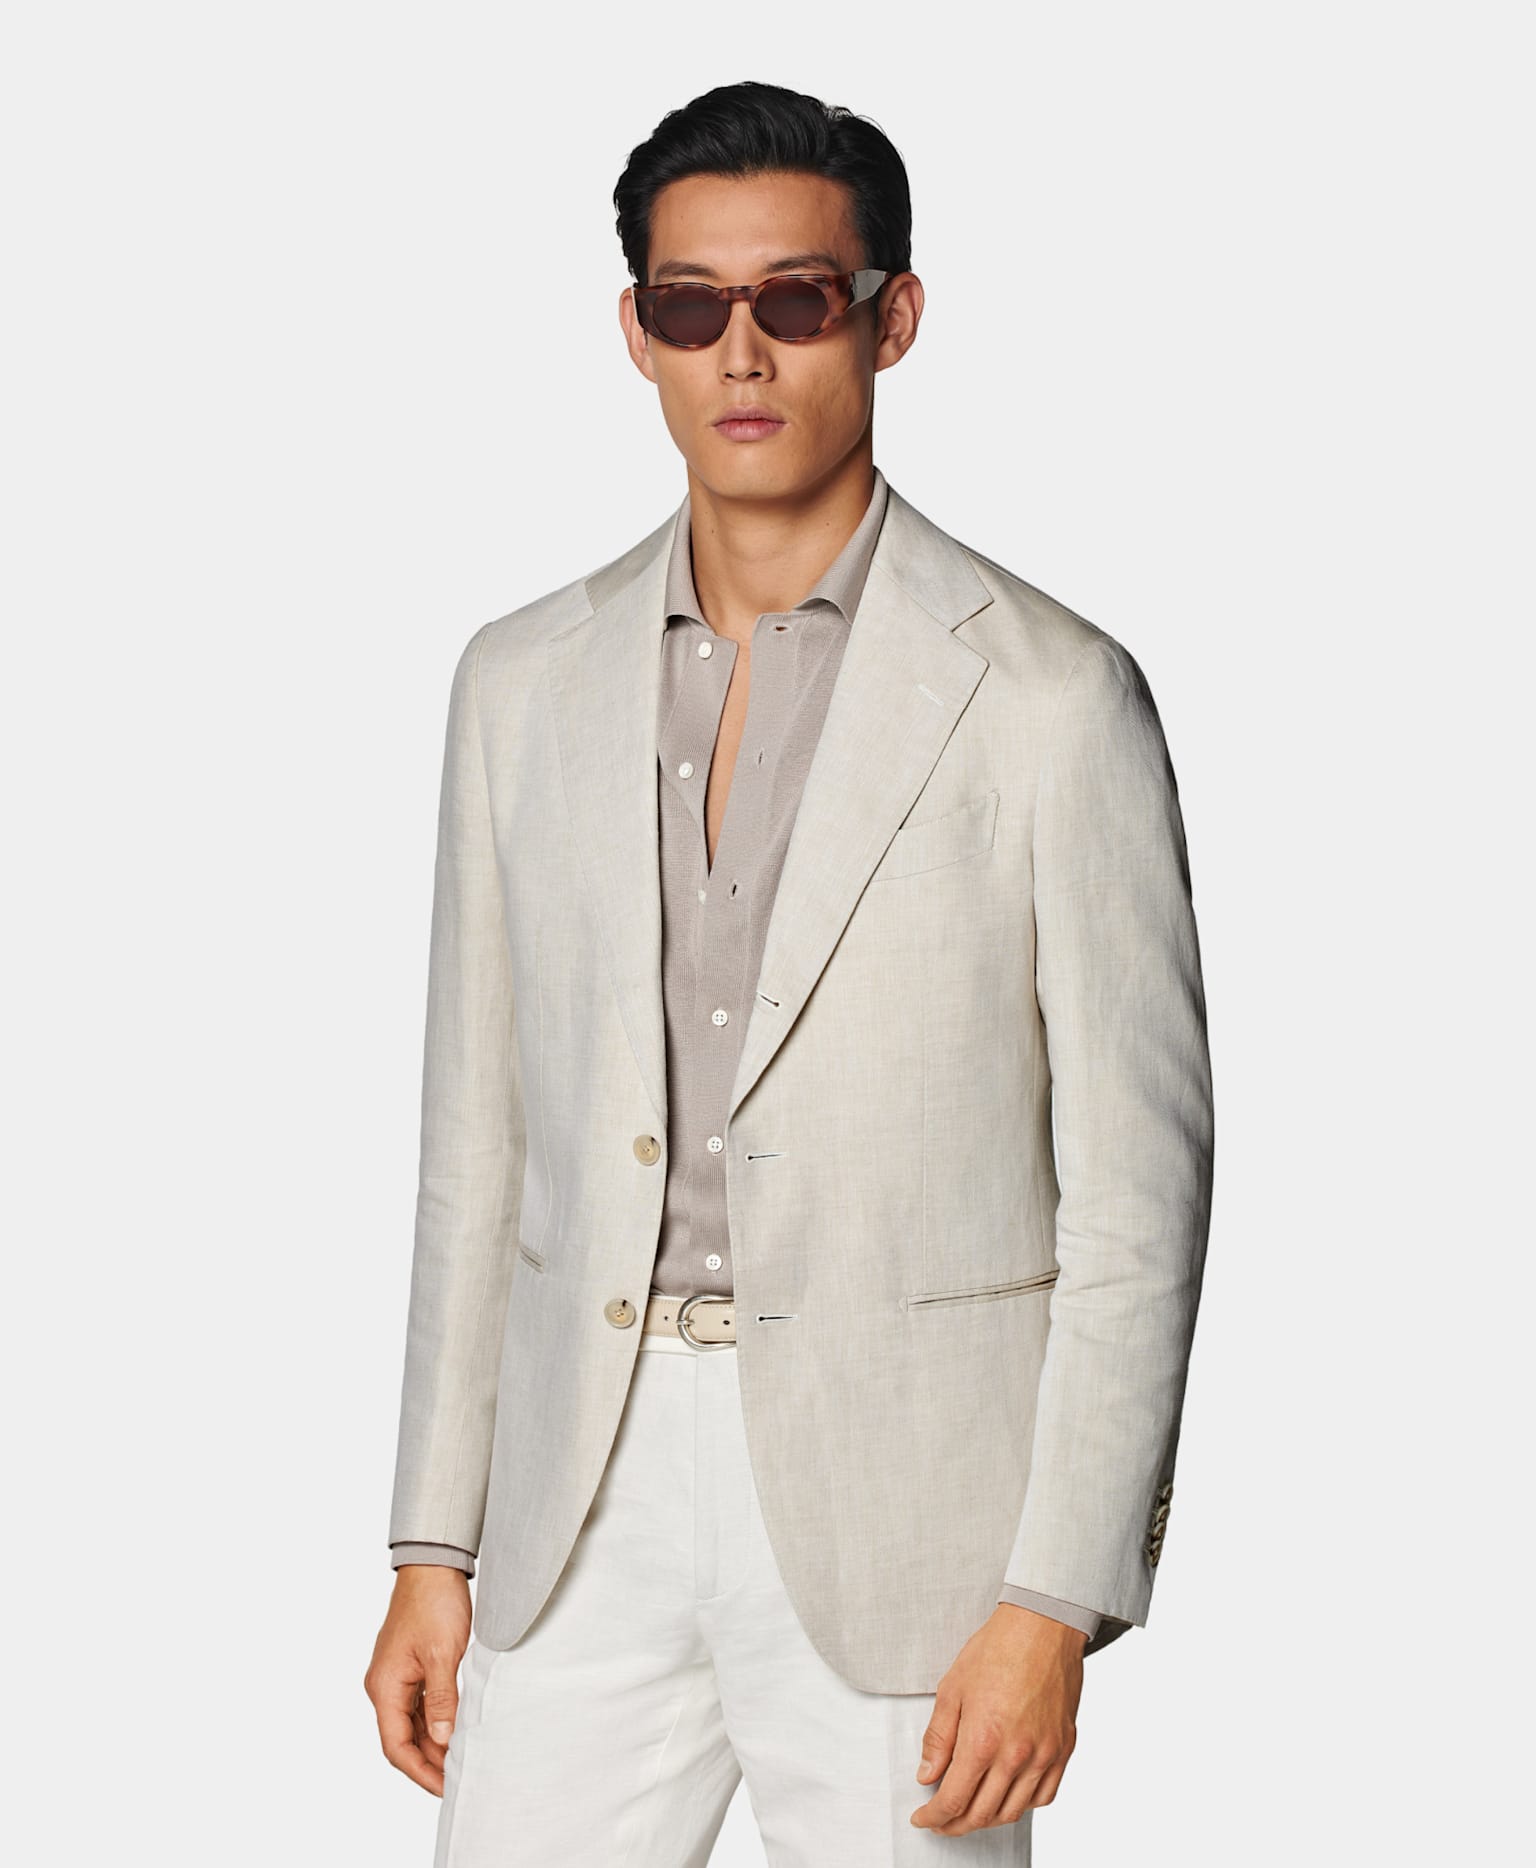 Blazer arena con camisa de punto gris topo, cinturón de piel en tono crudo y pantalones blancos.